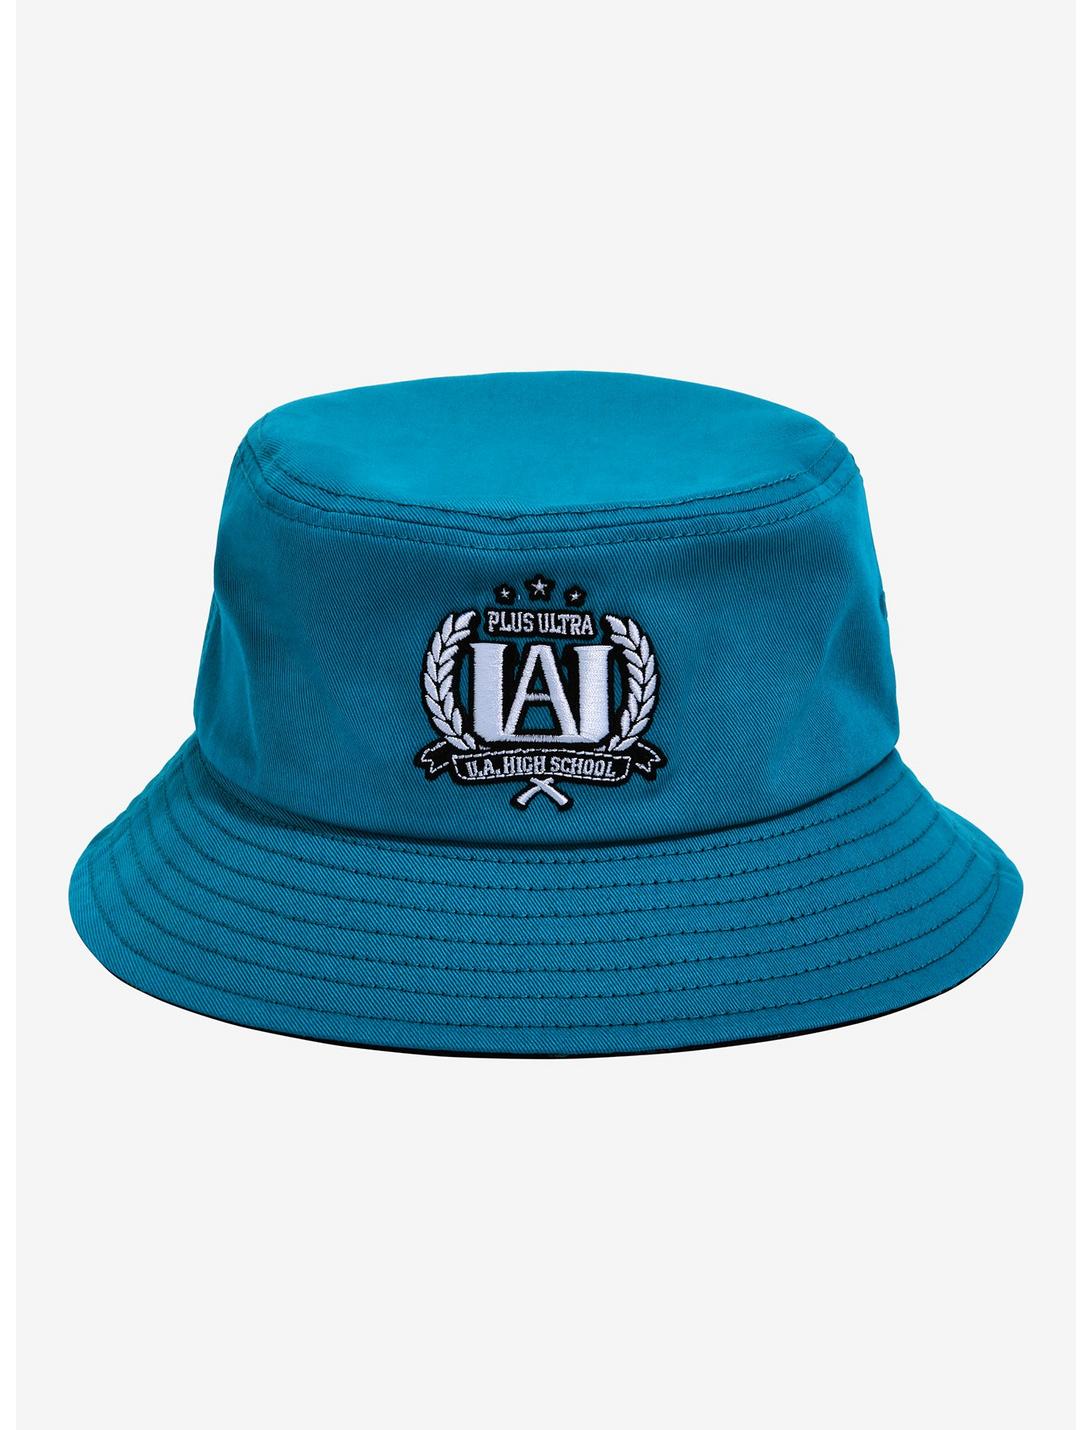 My Hero Academia U.A. High School Bucket Hat | BoxLunch